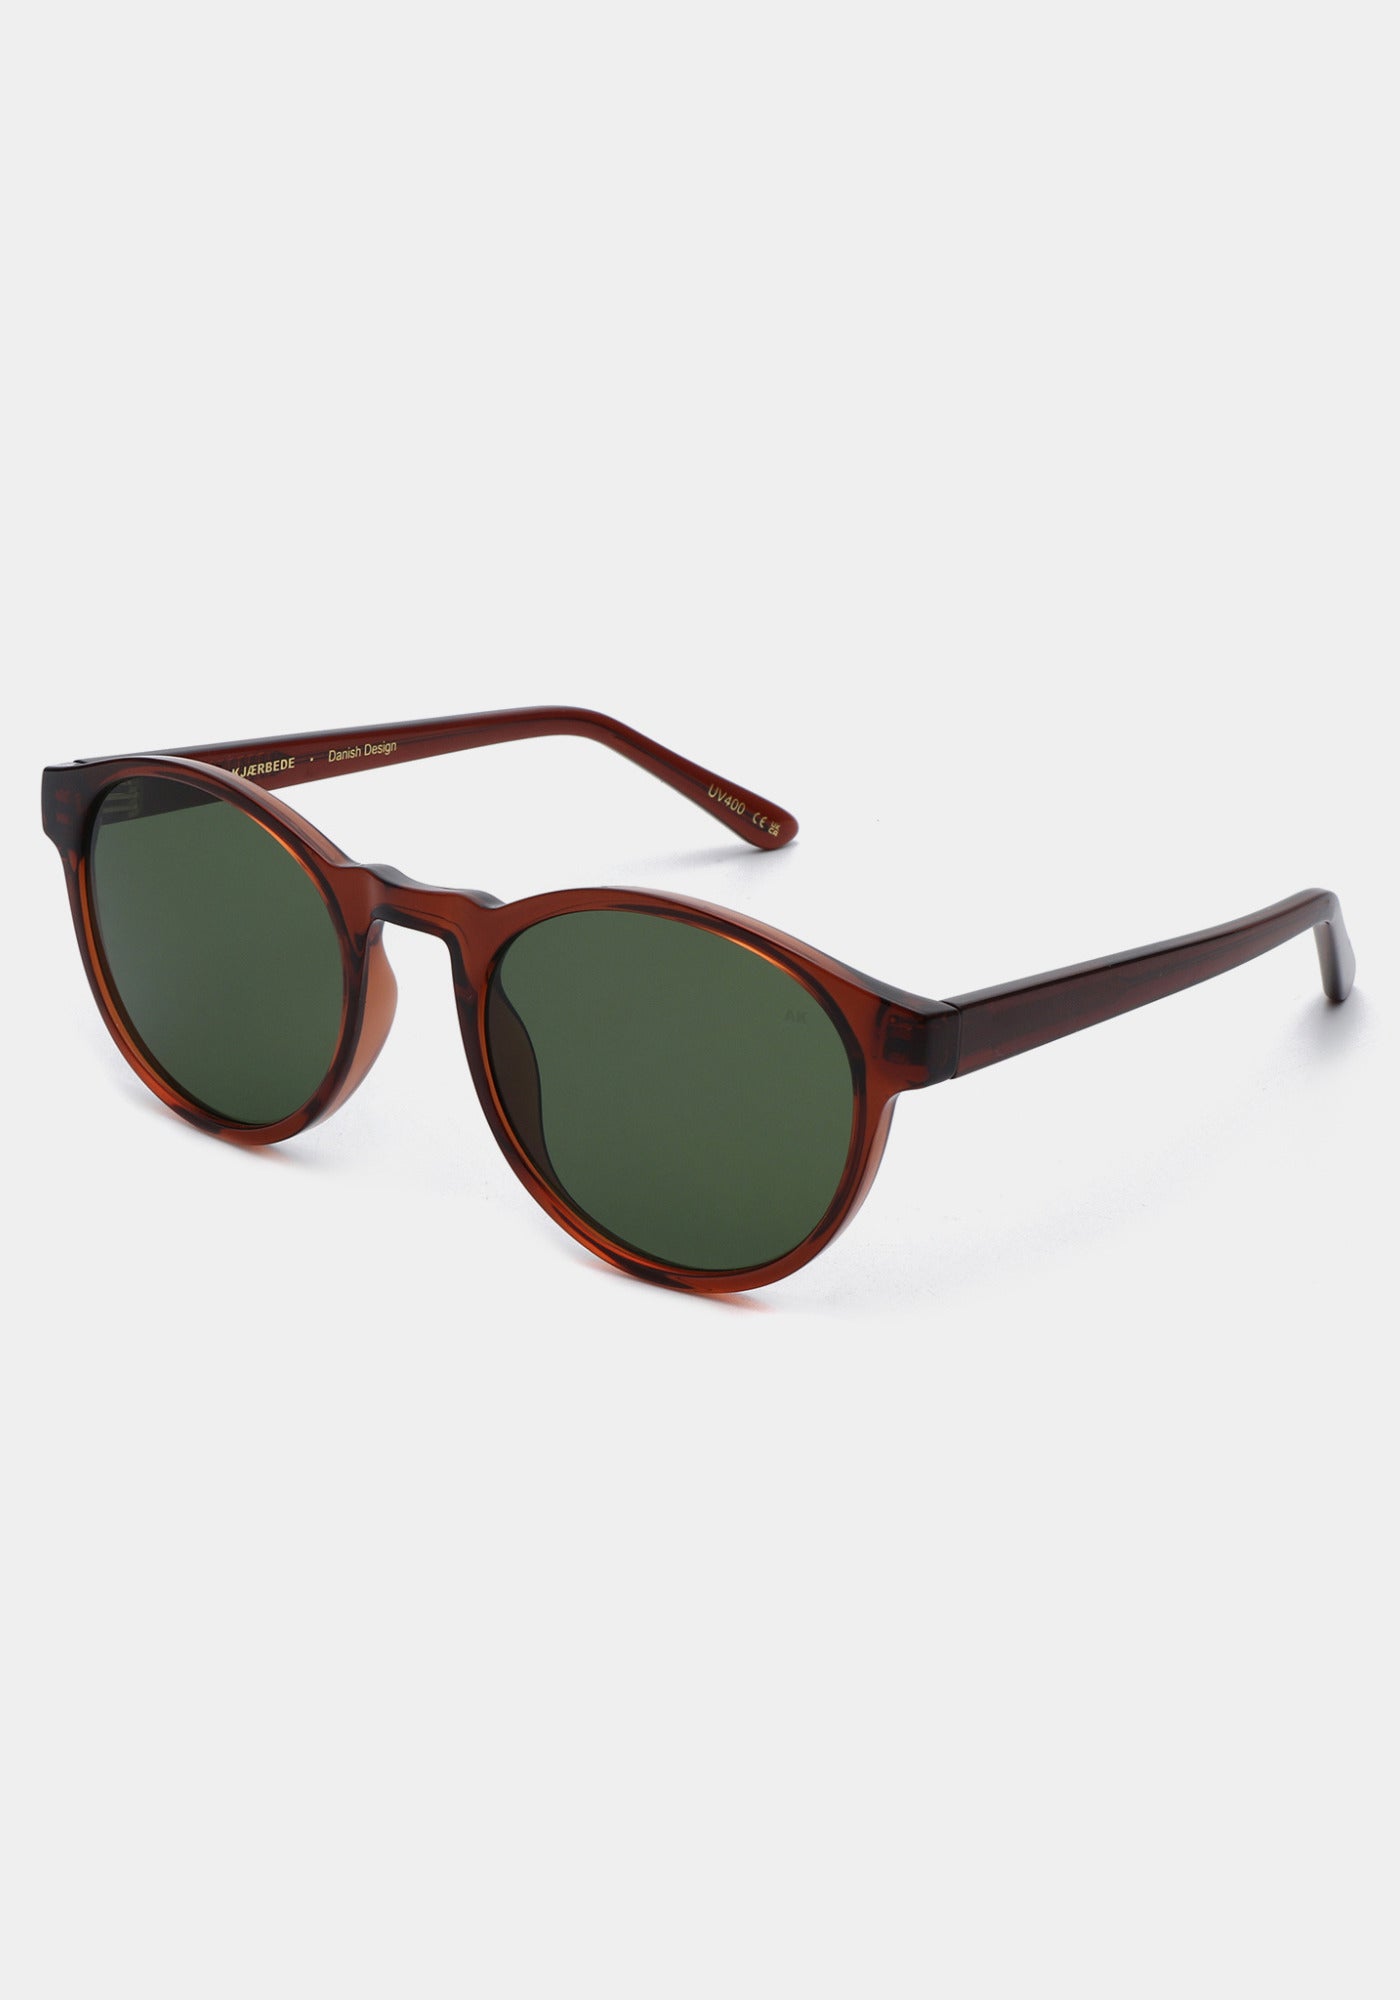 Les lunettes de soleil Marvin brown transparent de chez A.Kjaerbede